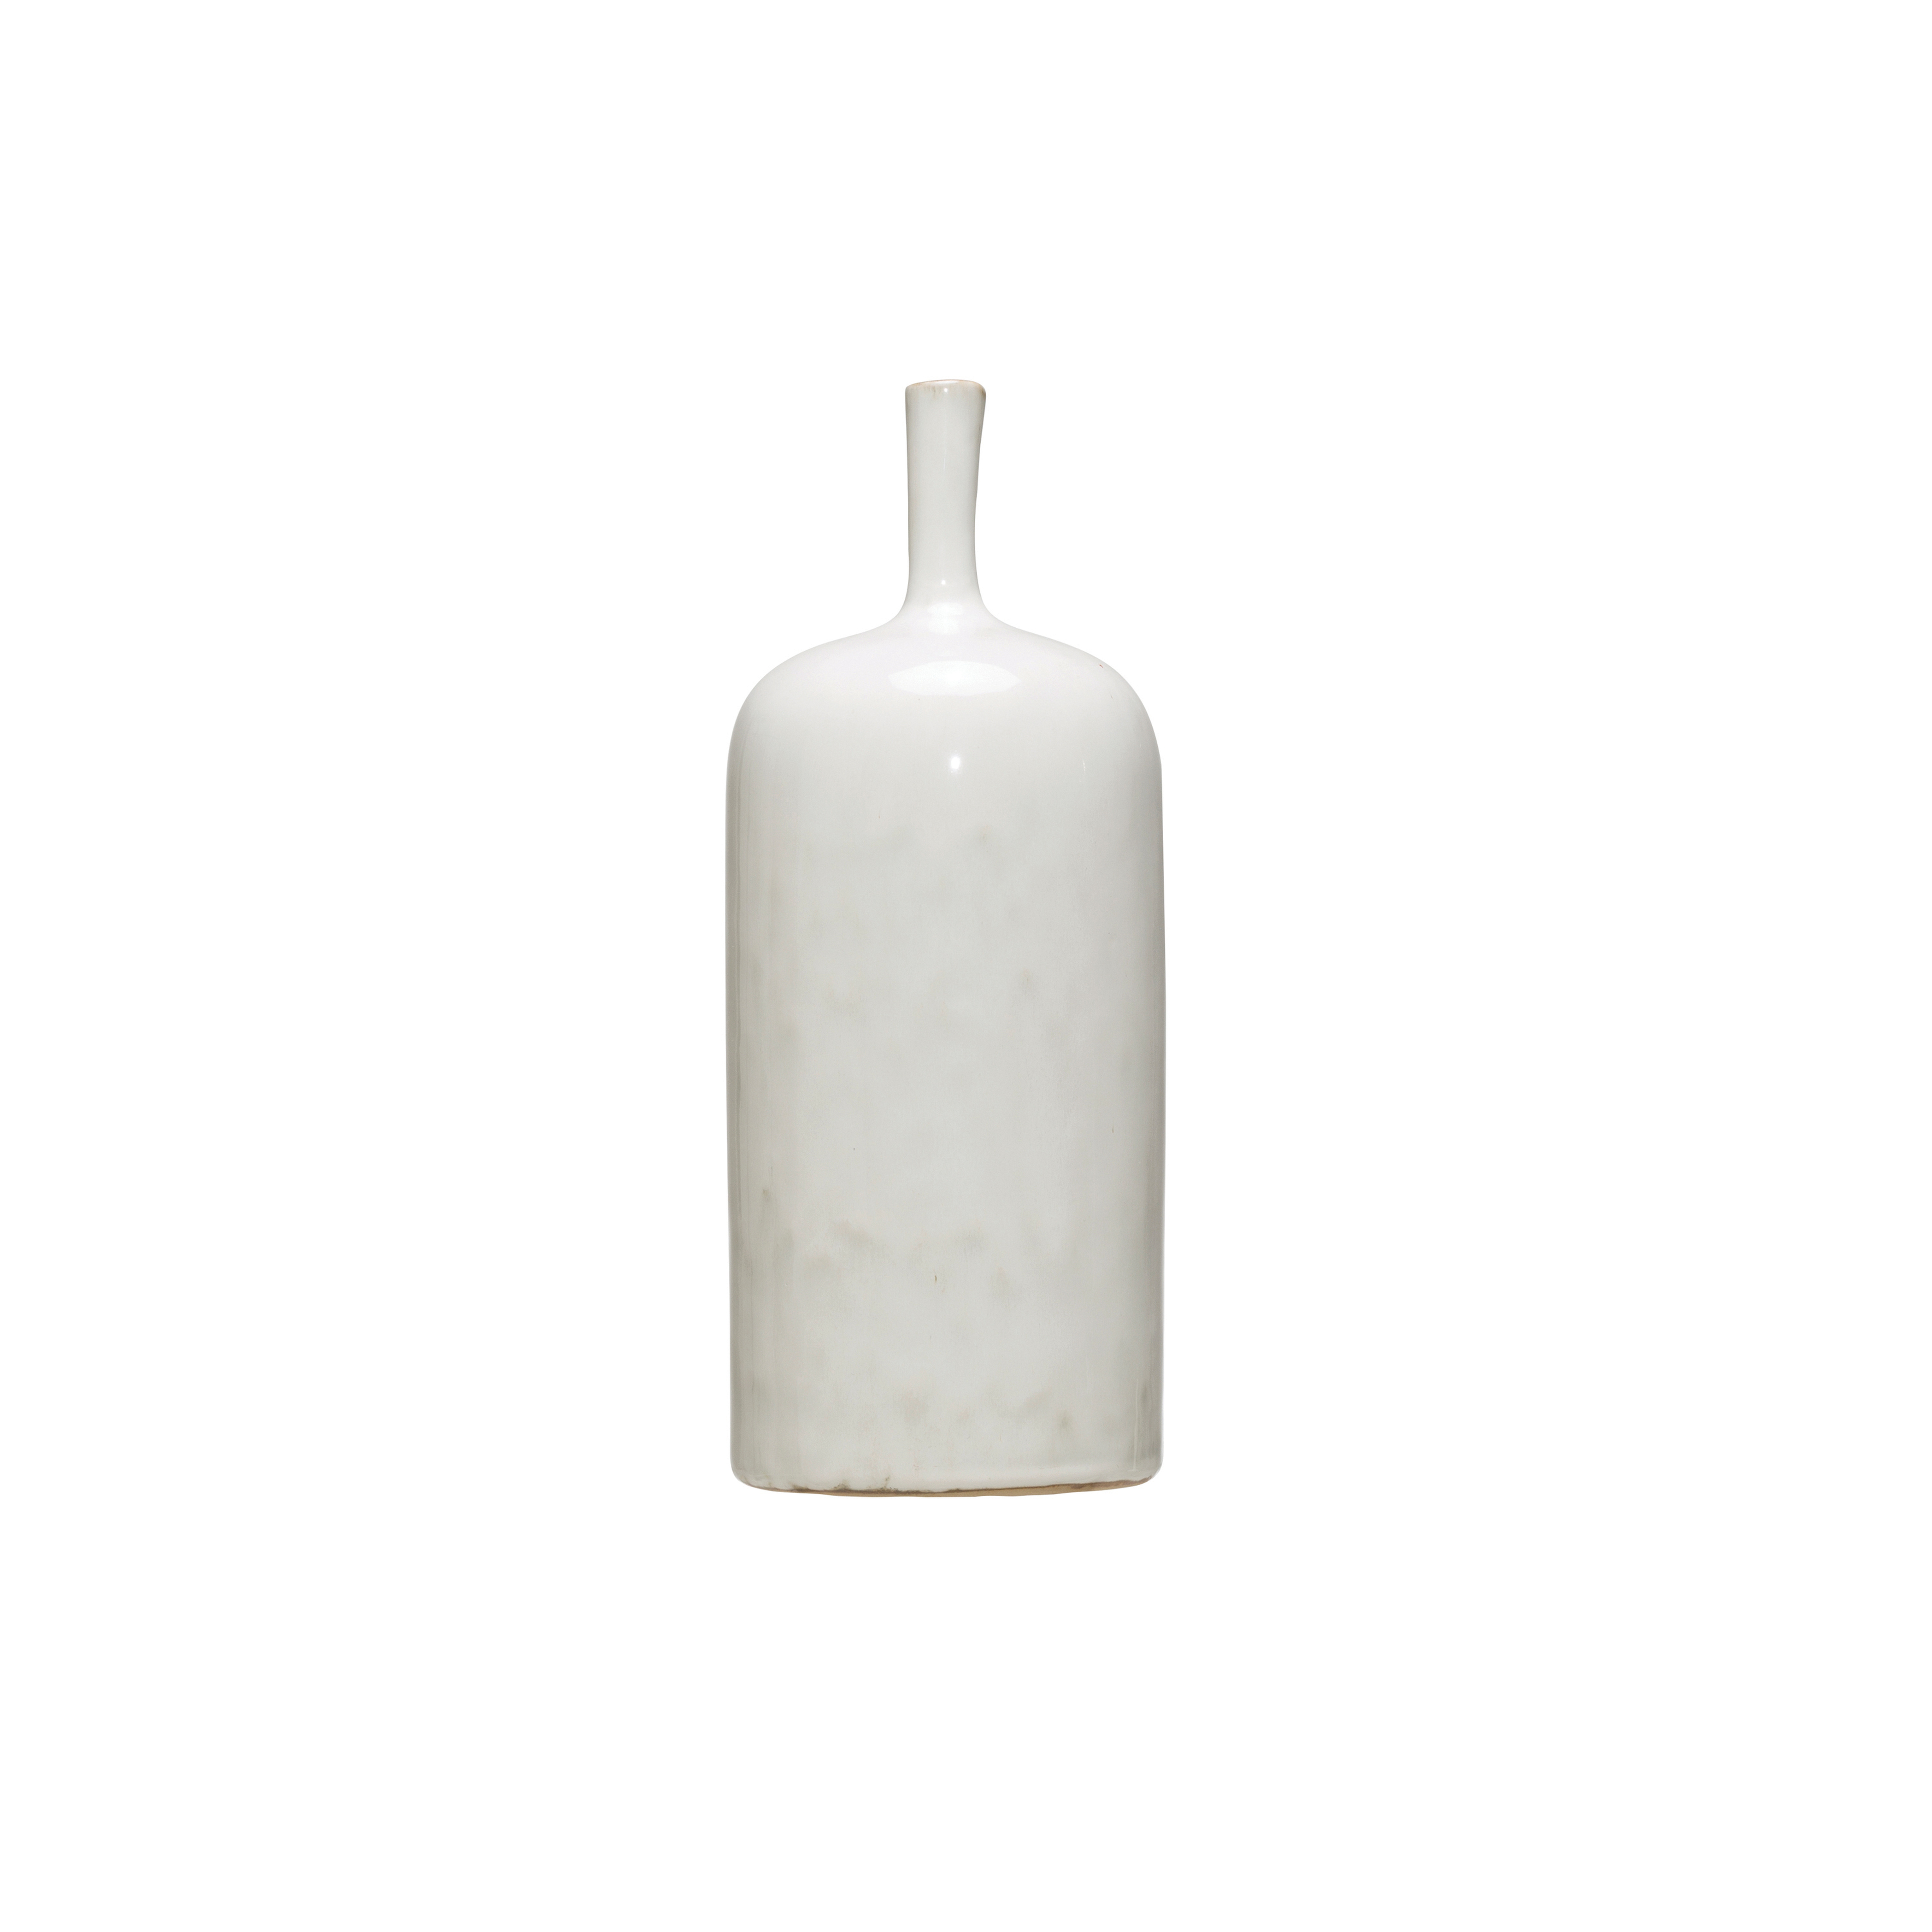 Narrow Bottle Neck Vase, White, Large - Nomad Home